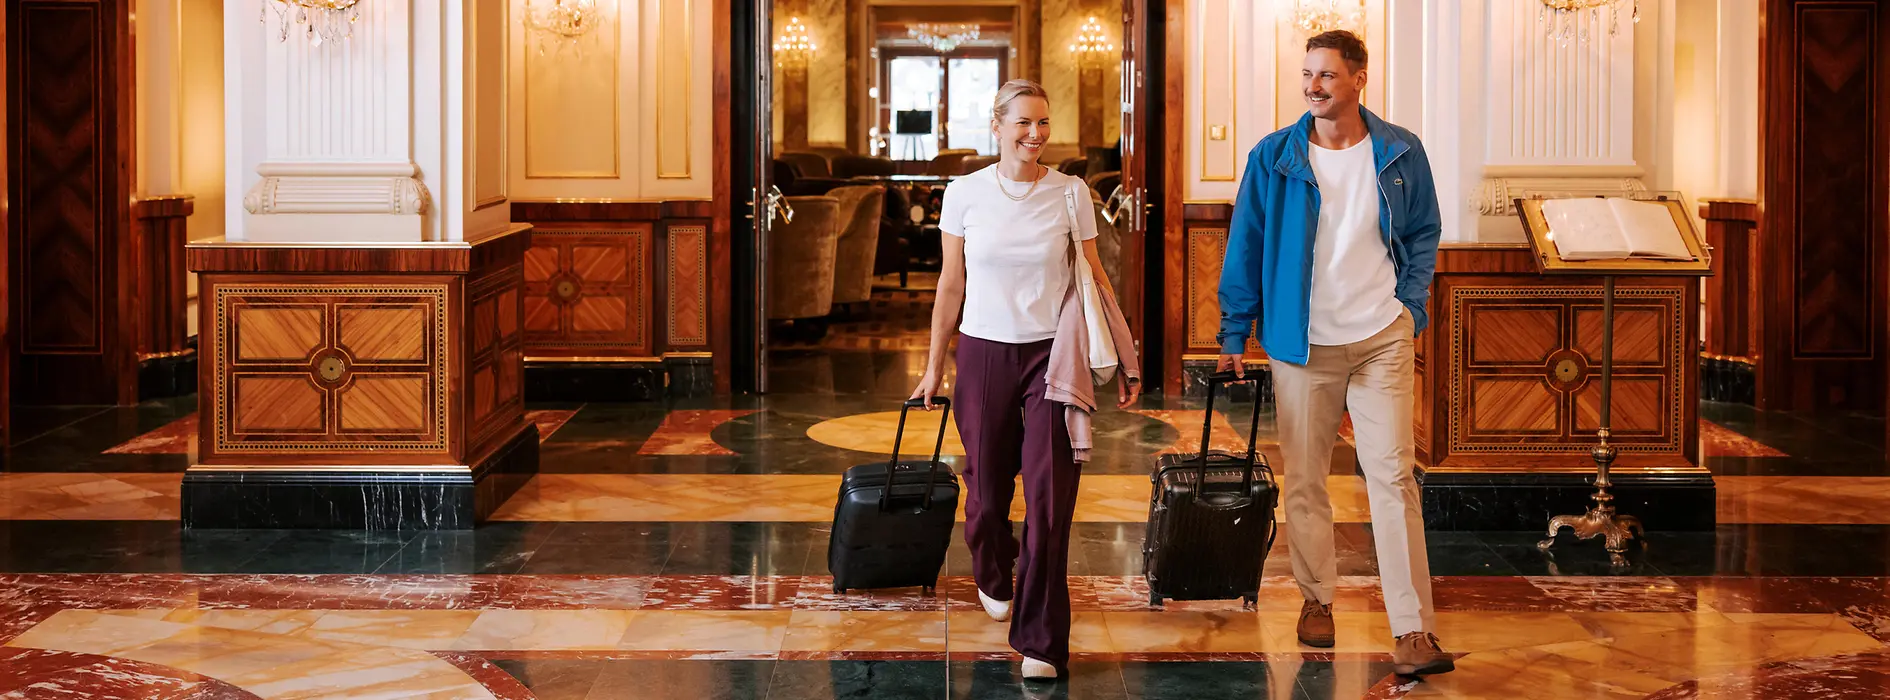 Két nő poggyásszal egy bécsi szállodában